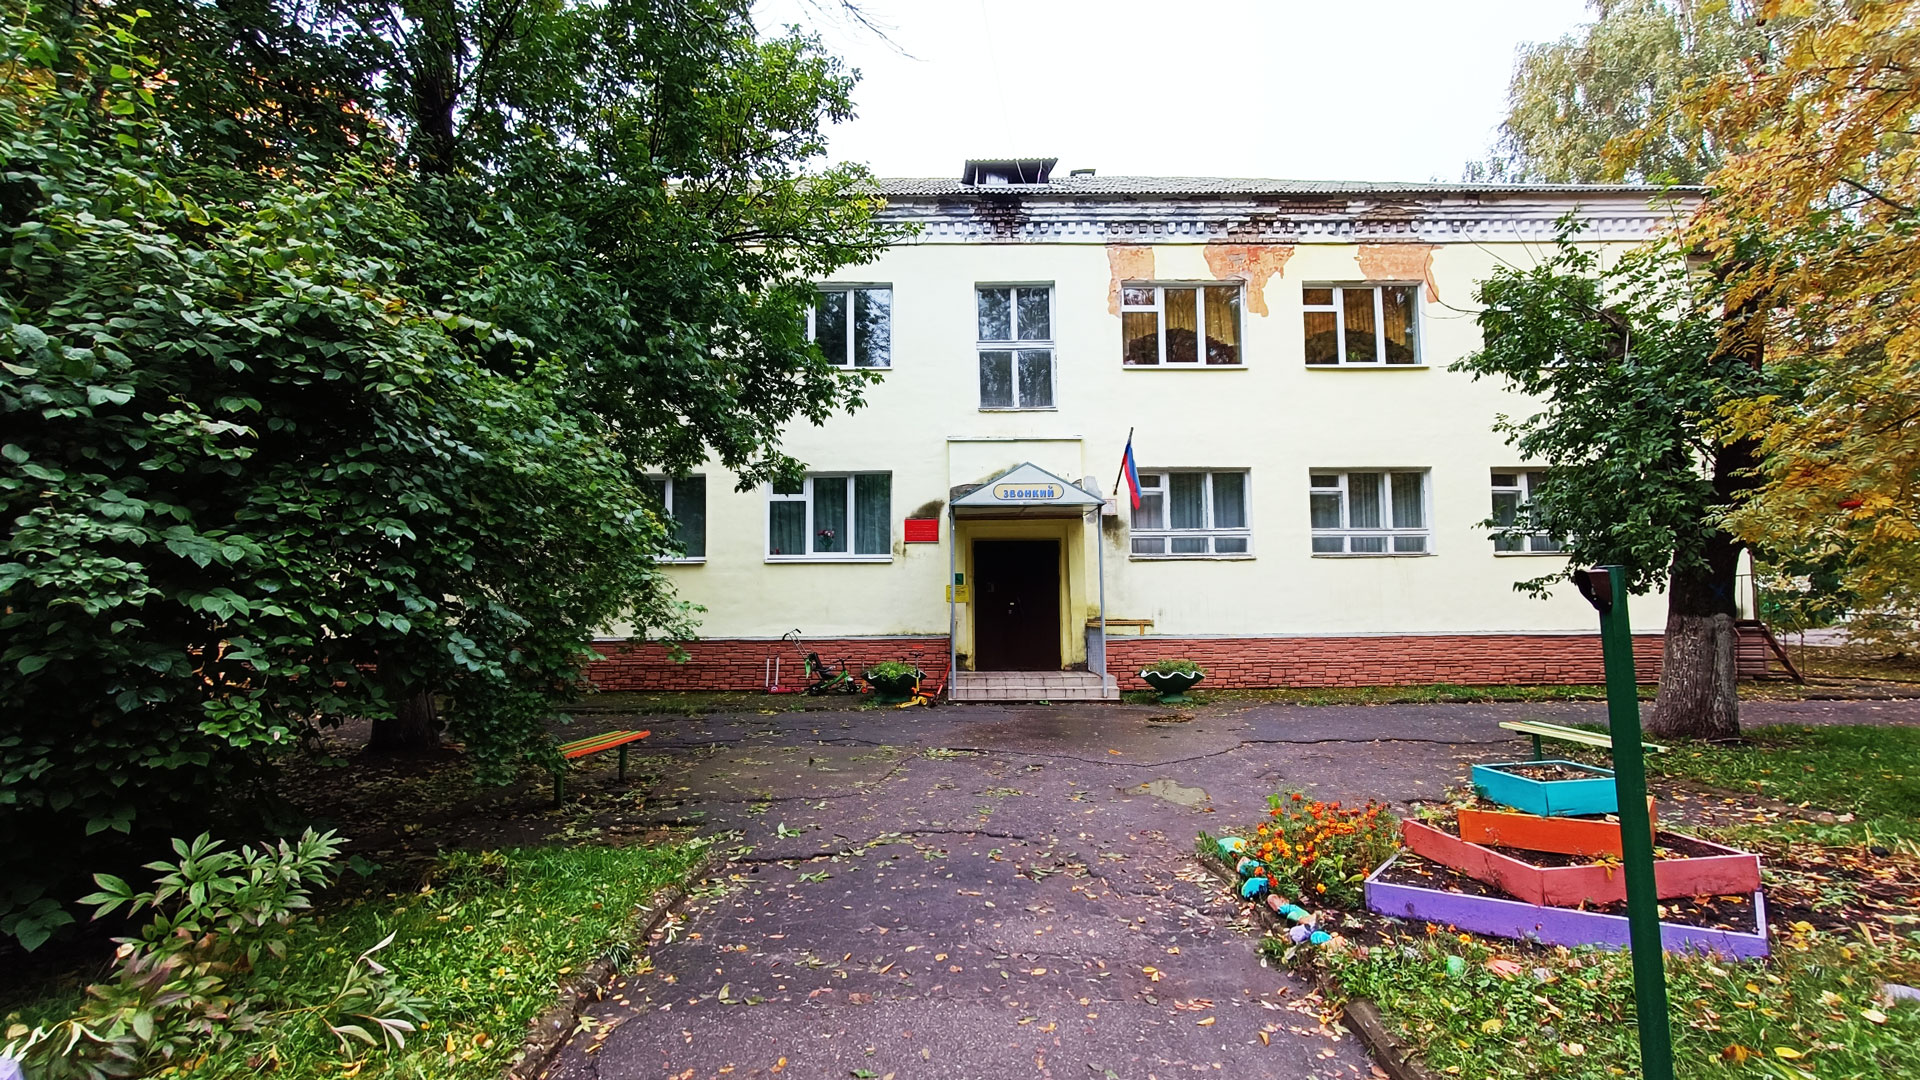 Детский сад 182 Ярославль: общий вид здания.